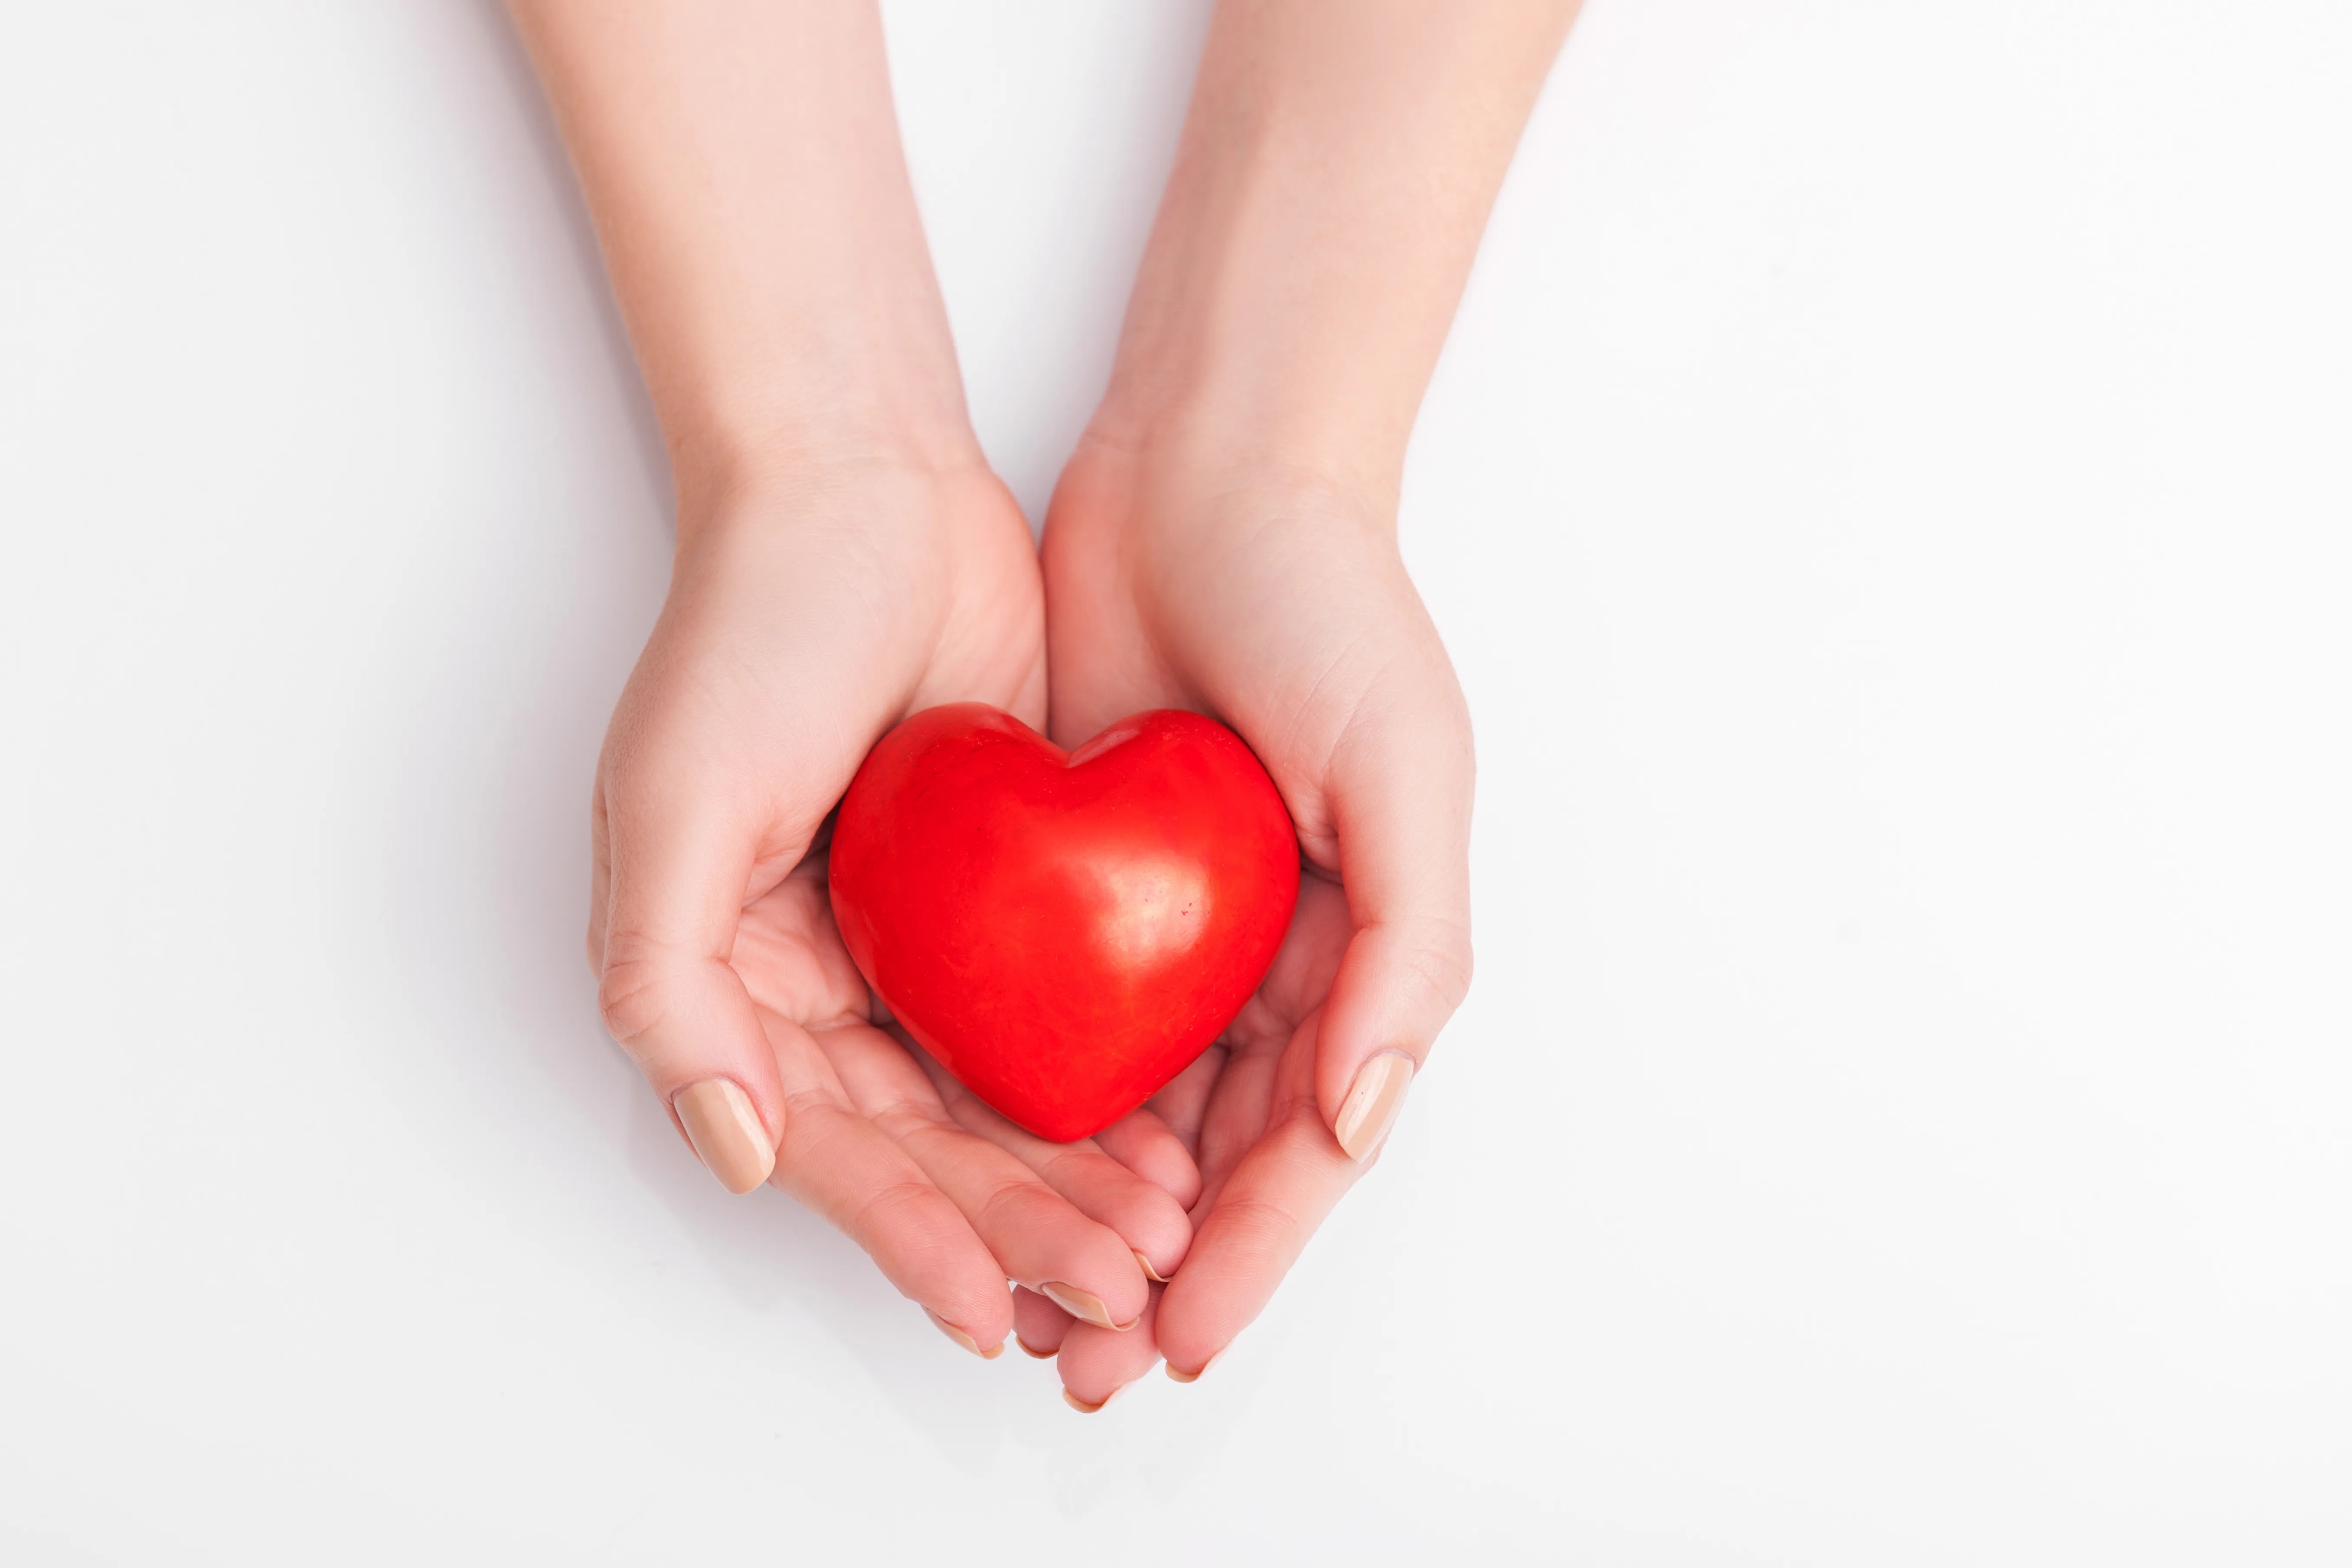 Signos y síntomas de un ataque al corazón: cómo saber si está sufriendo un ataque al corazón